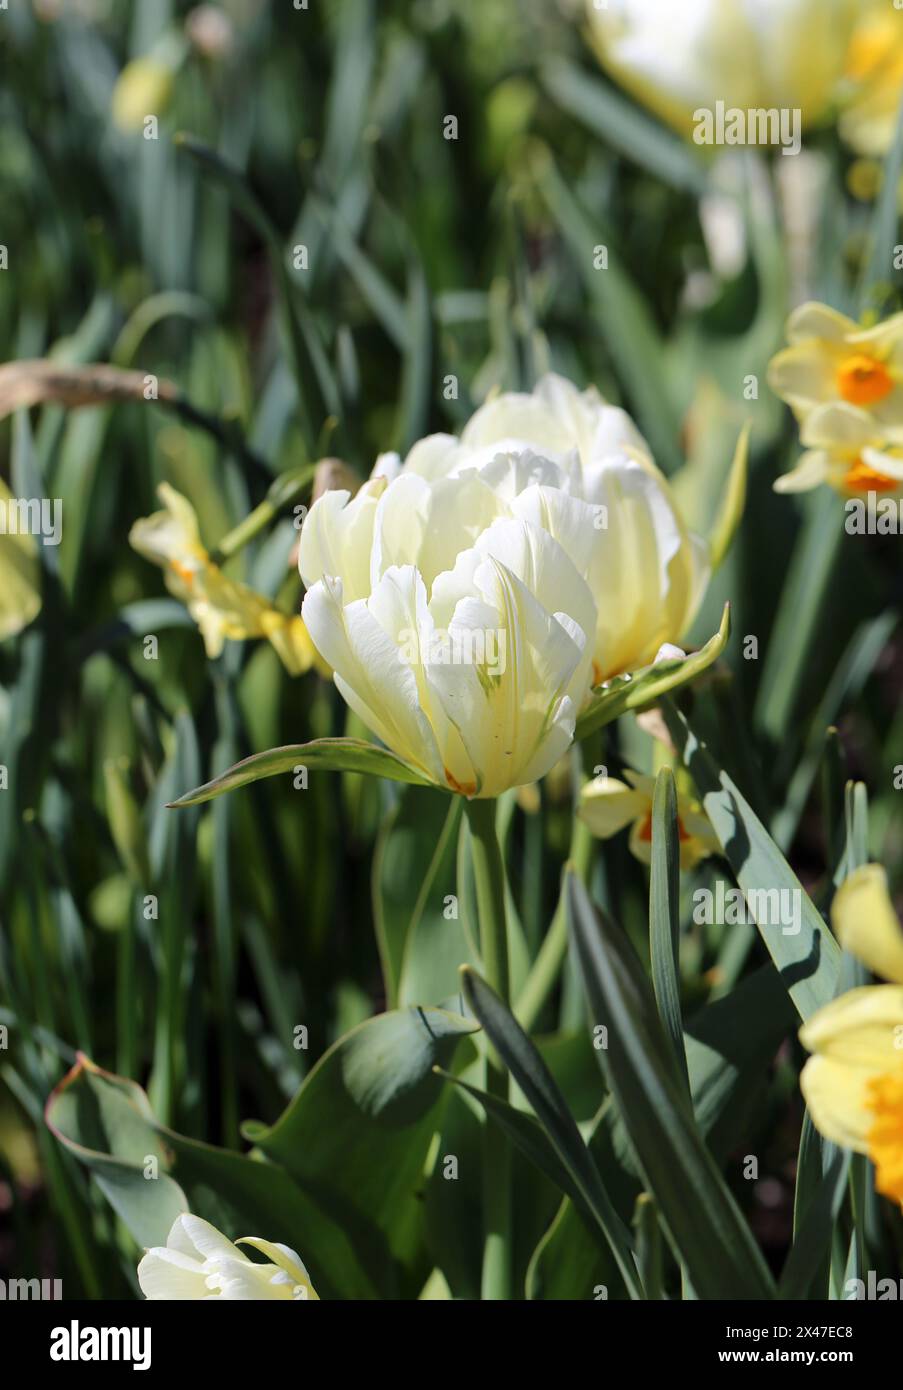 Tulipe blanche. Belles fleurs de tulipes photographiées dans le jardin botanique de Gothenburg, Suède (SVE : Botaniska Trädgården Göteborg). Gros plan sur la nature. Banque D'Images